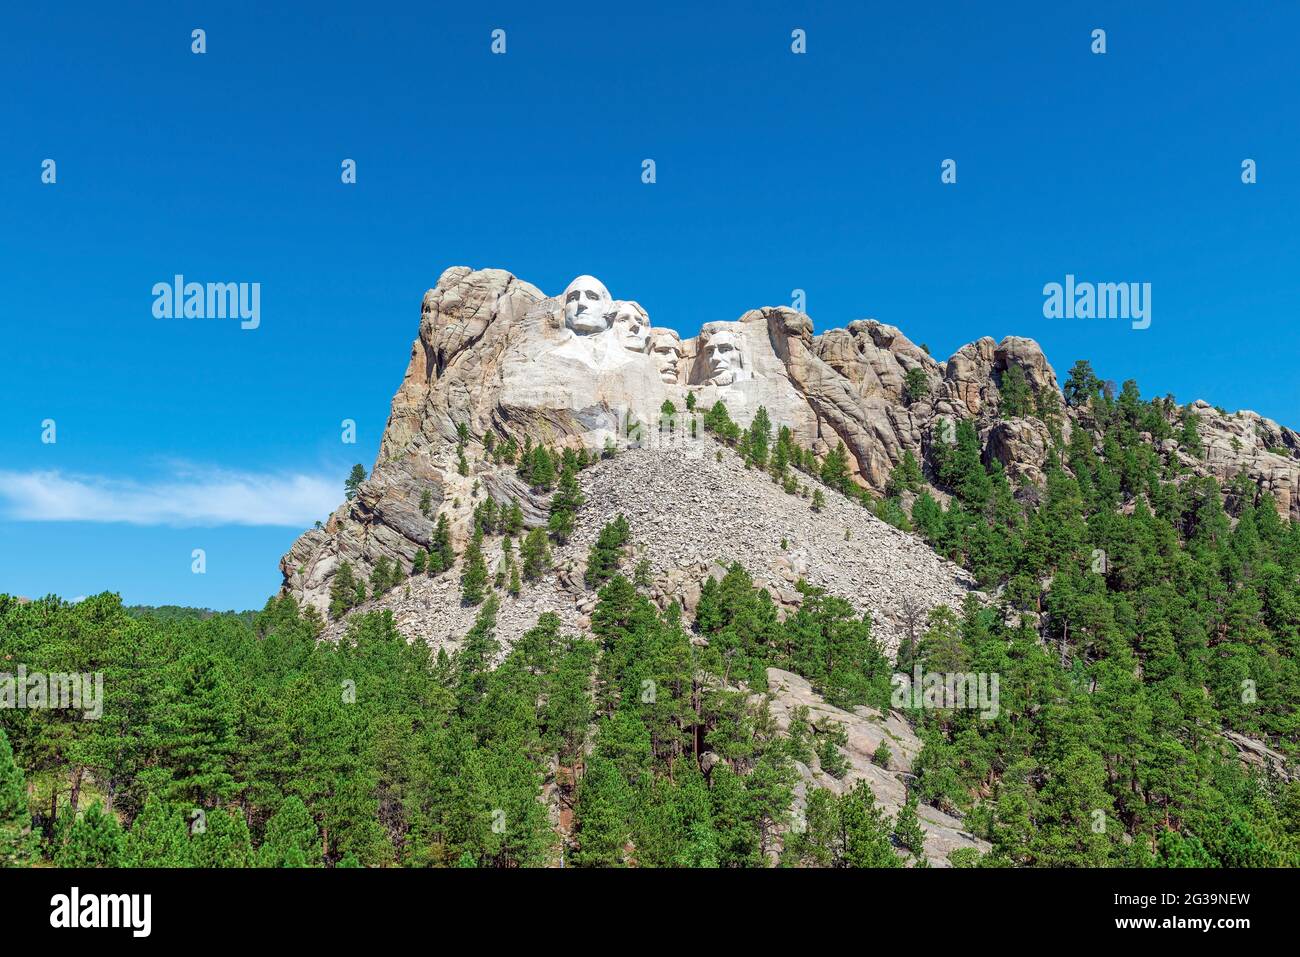 Mount Rushmore mit US-Präsidenten geschnitzte Porträts im Sommer, South Dakota, Vereinigte Staaten von Amerika, USA. Stockfoto